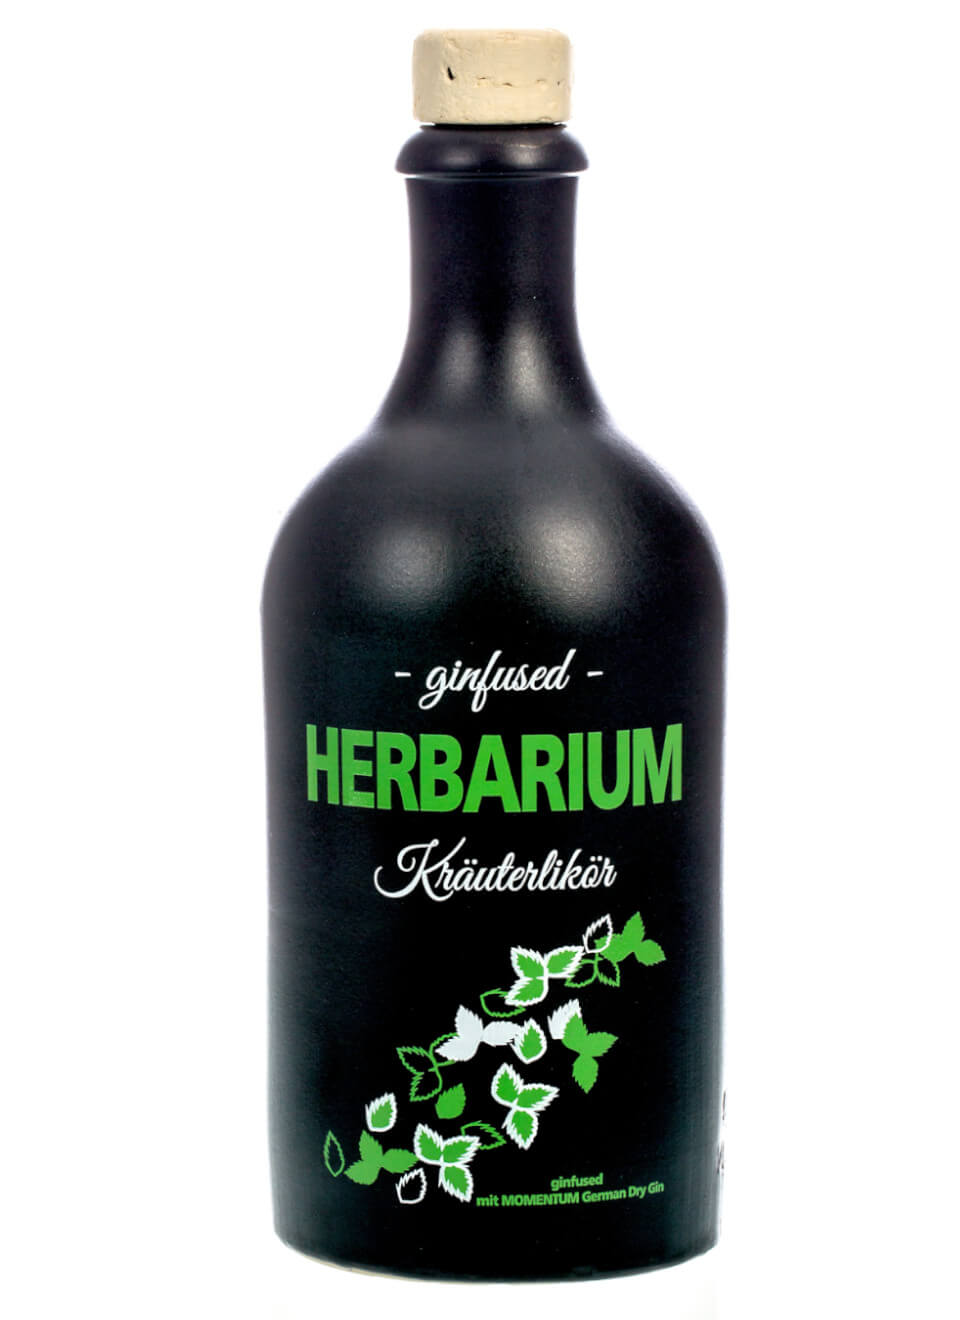 Herbarium Kräuterlikör 0,5 L